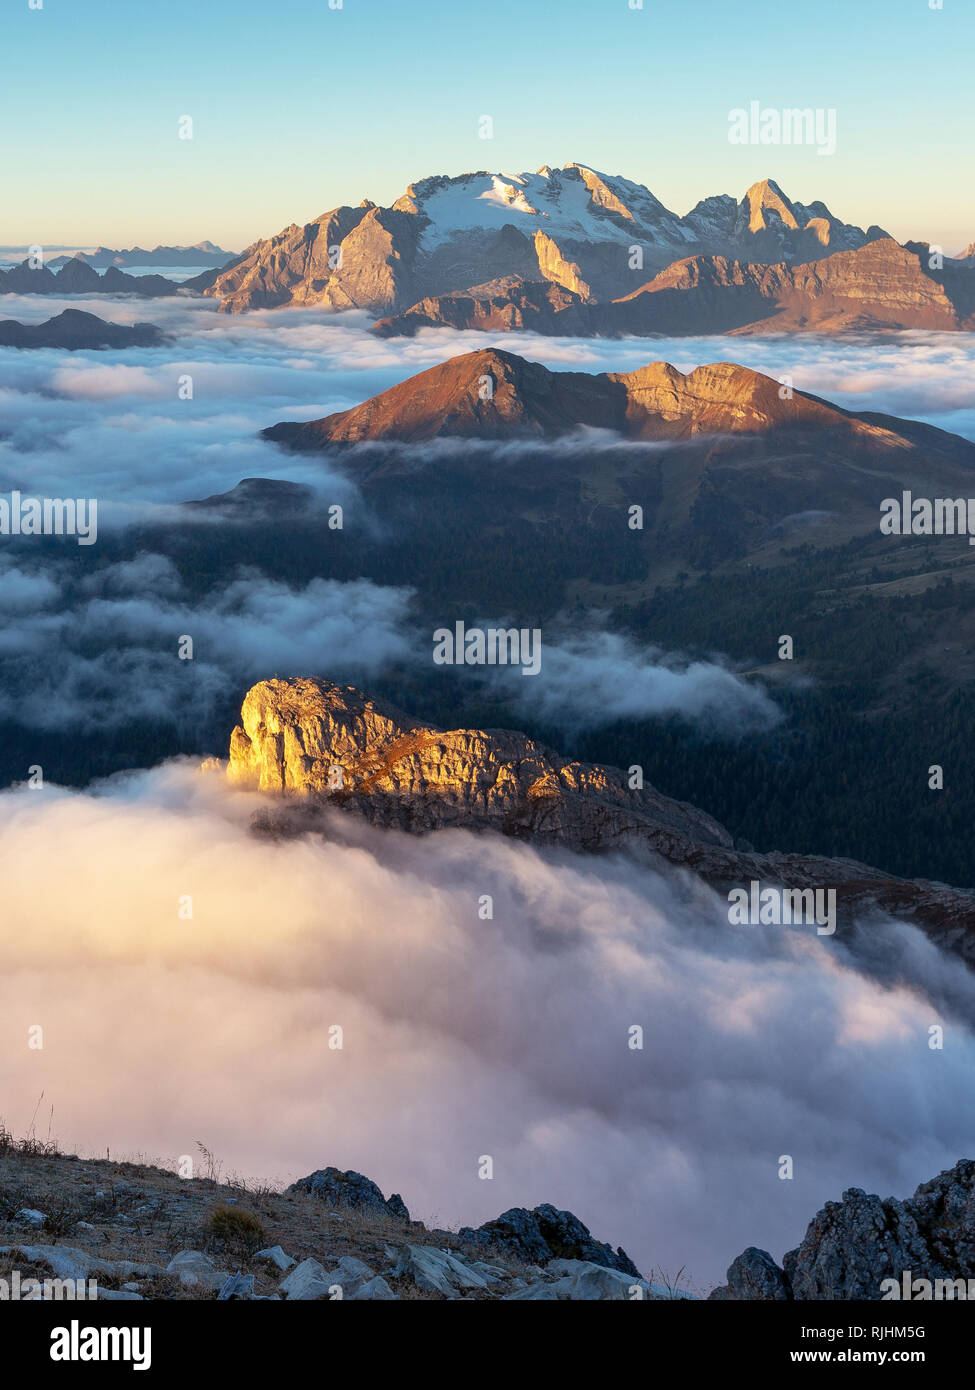 Le Dolomiti all'alba, le nuvole e le vette: Sass de Stria, col di Lana, le montagne della Marmolada. Alpi Italiane. Europa. Foto Stock